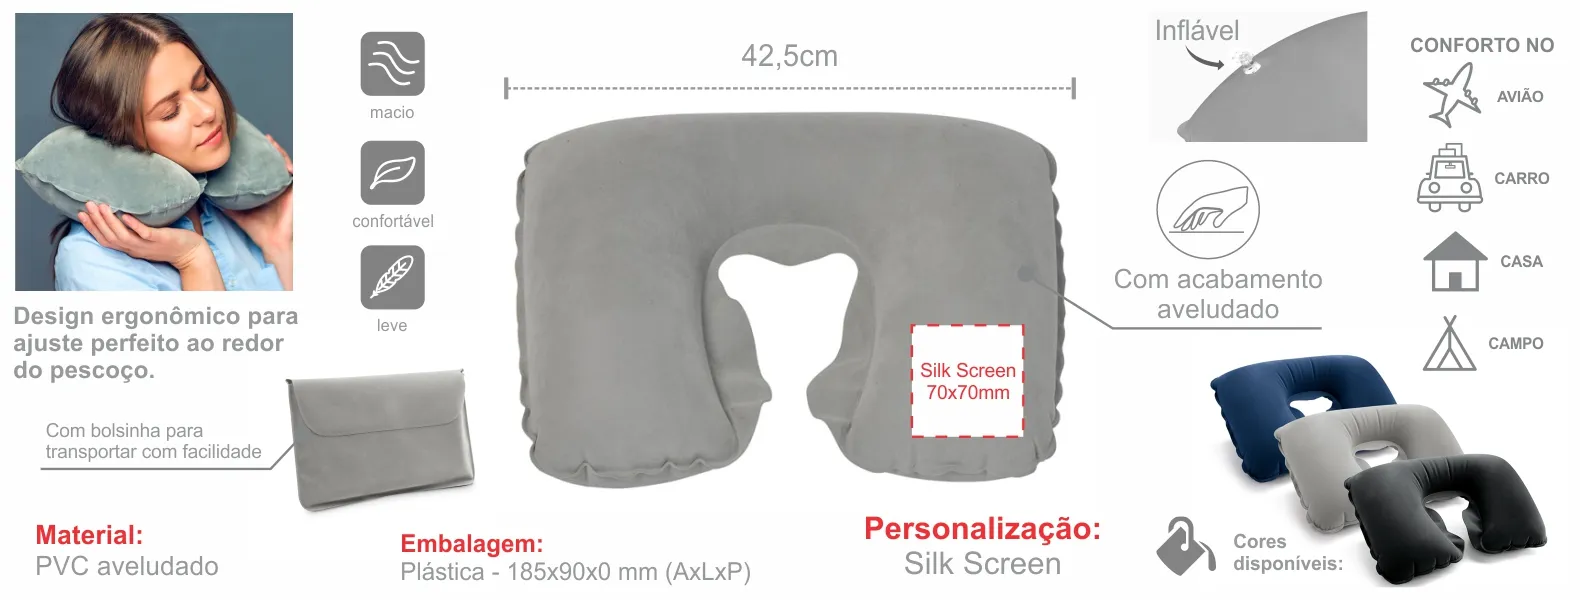 Almofada de pescoço inflável em PVC cinza. Conta com acabamento aveludado e bolsa.